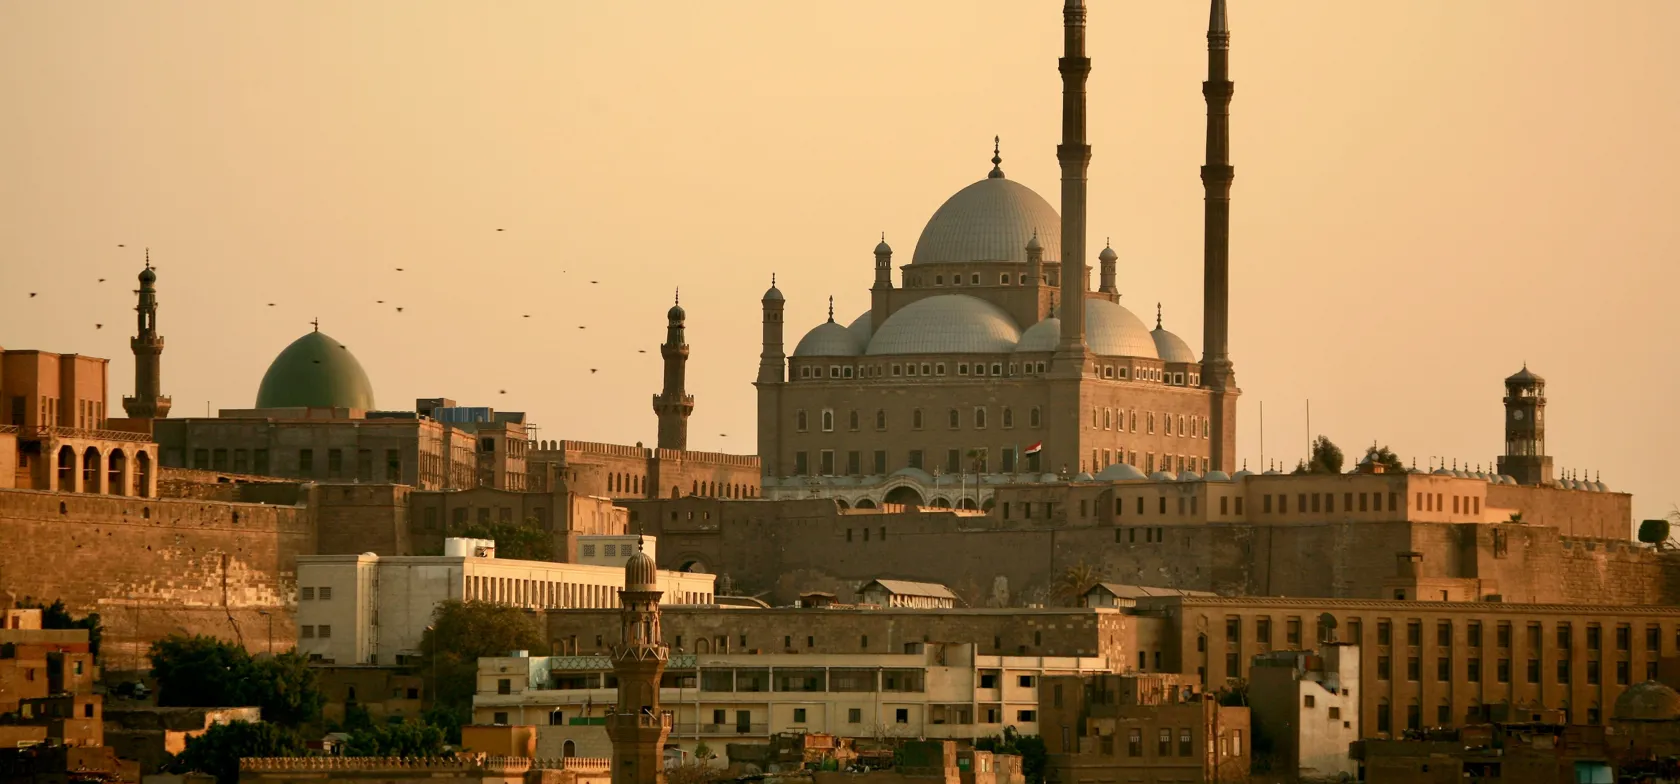 Udsigt til mohammed ali moskeen og citadellet i Kairo. Foto Viktors Farmor